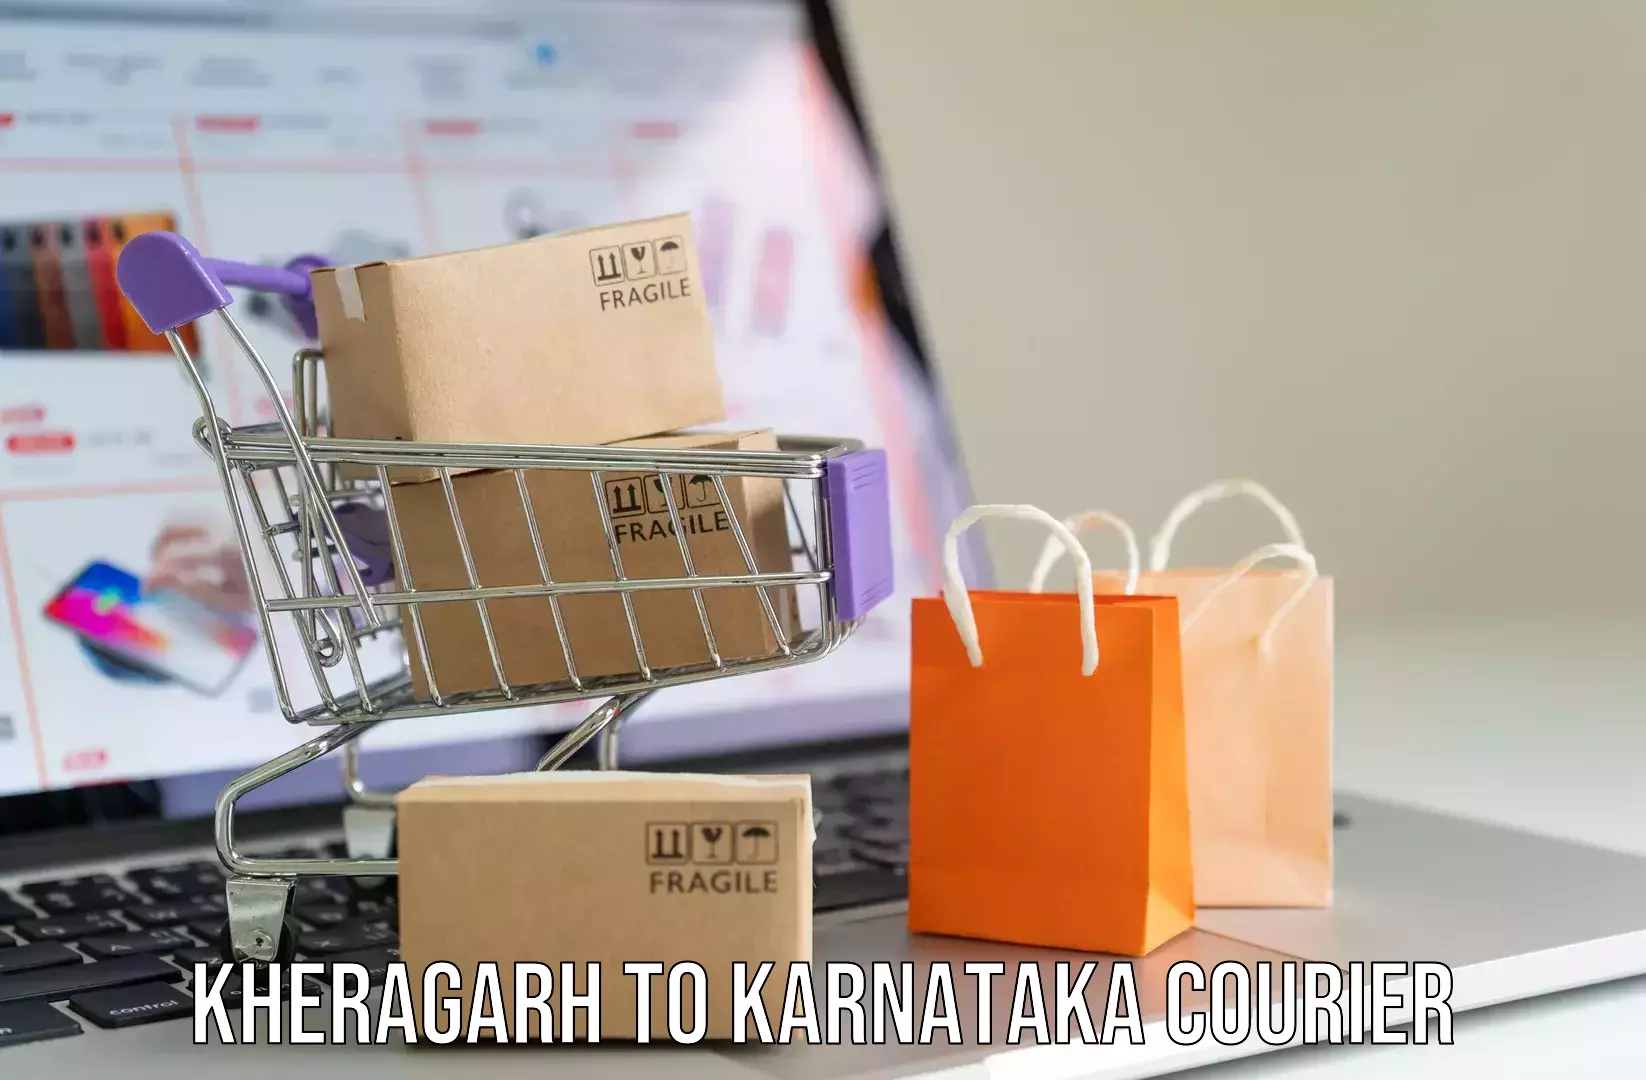 Luggage shipping rates Kheragarh to Kalaburagi